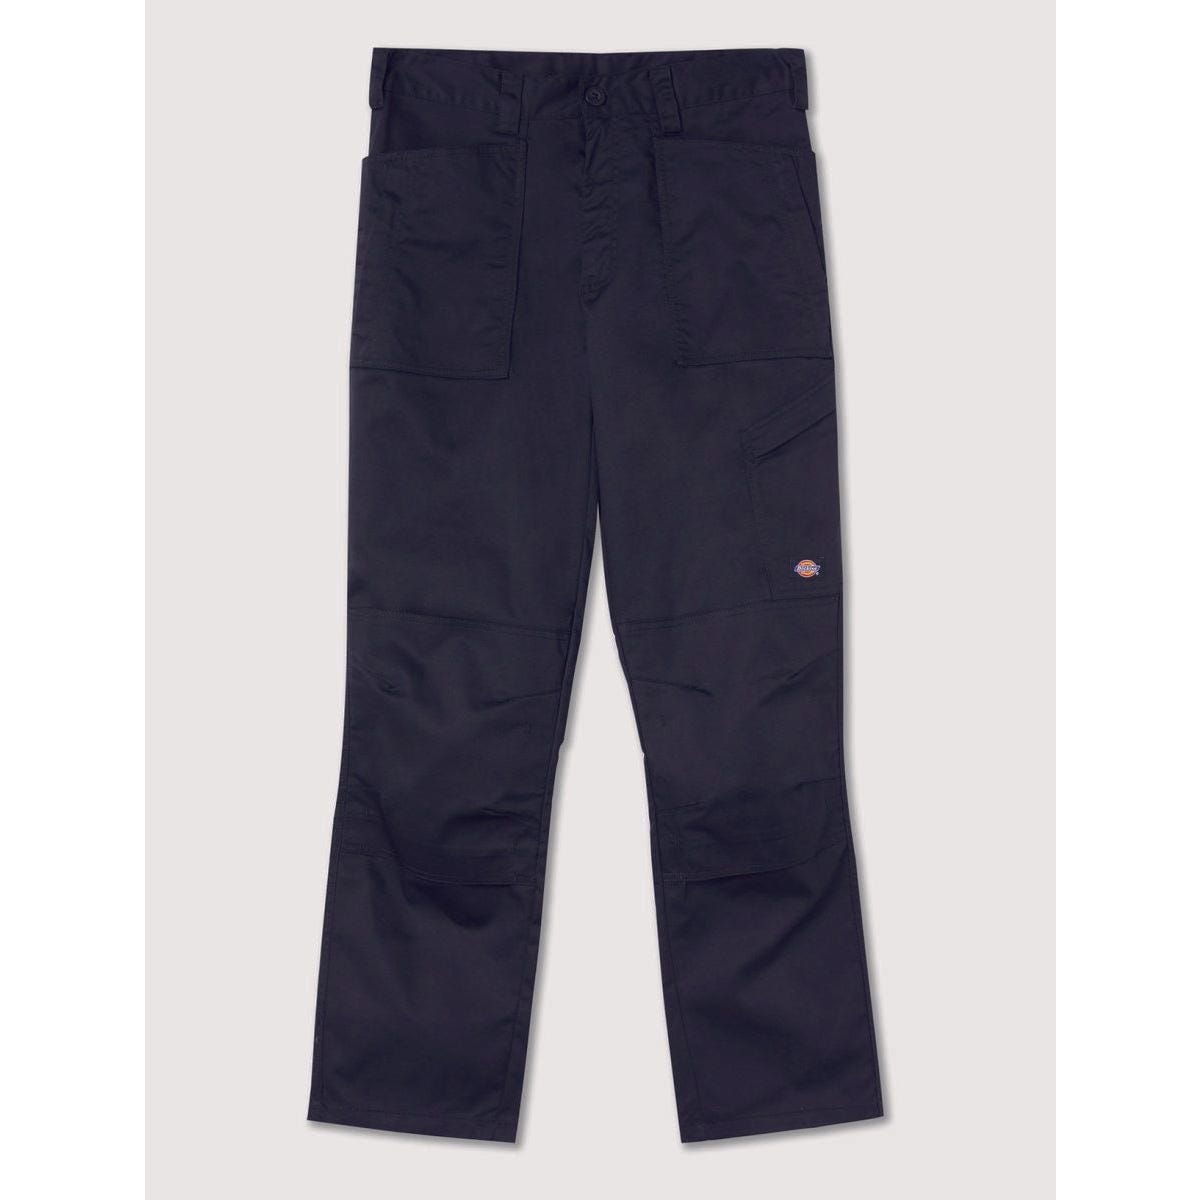 Pantalon de travail Action Flex gris - Dickies - Taille 44 7